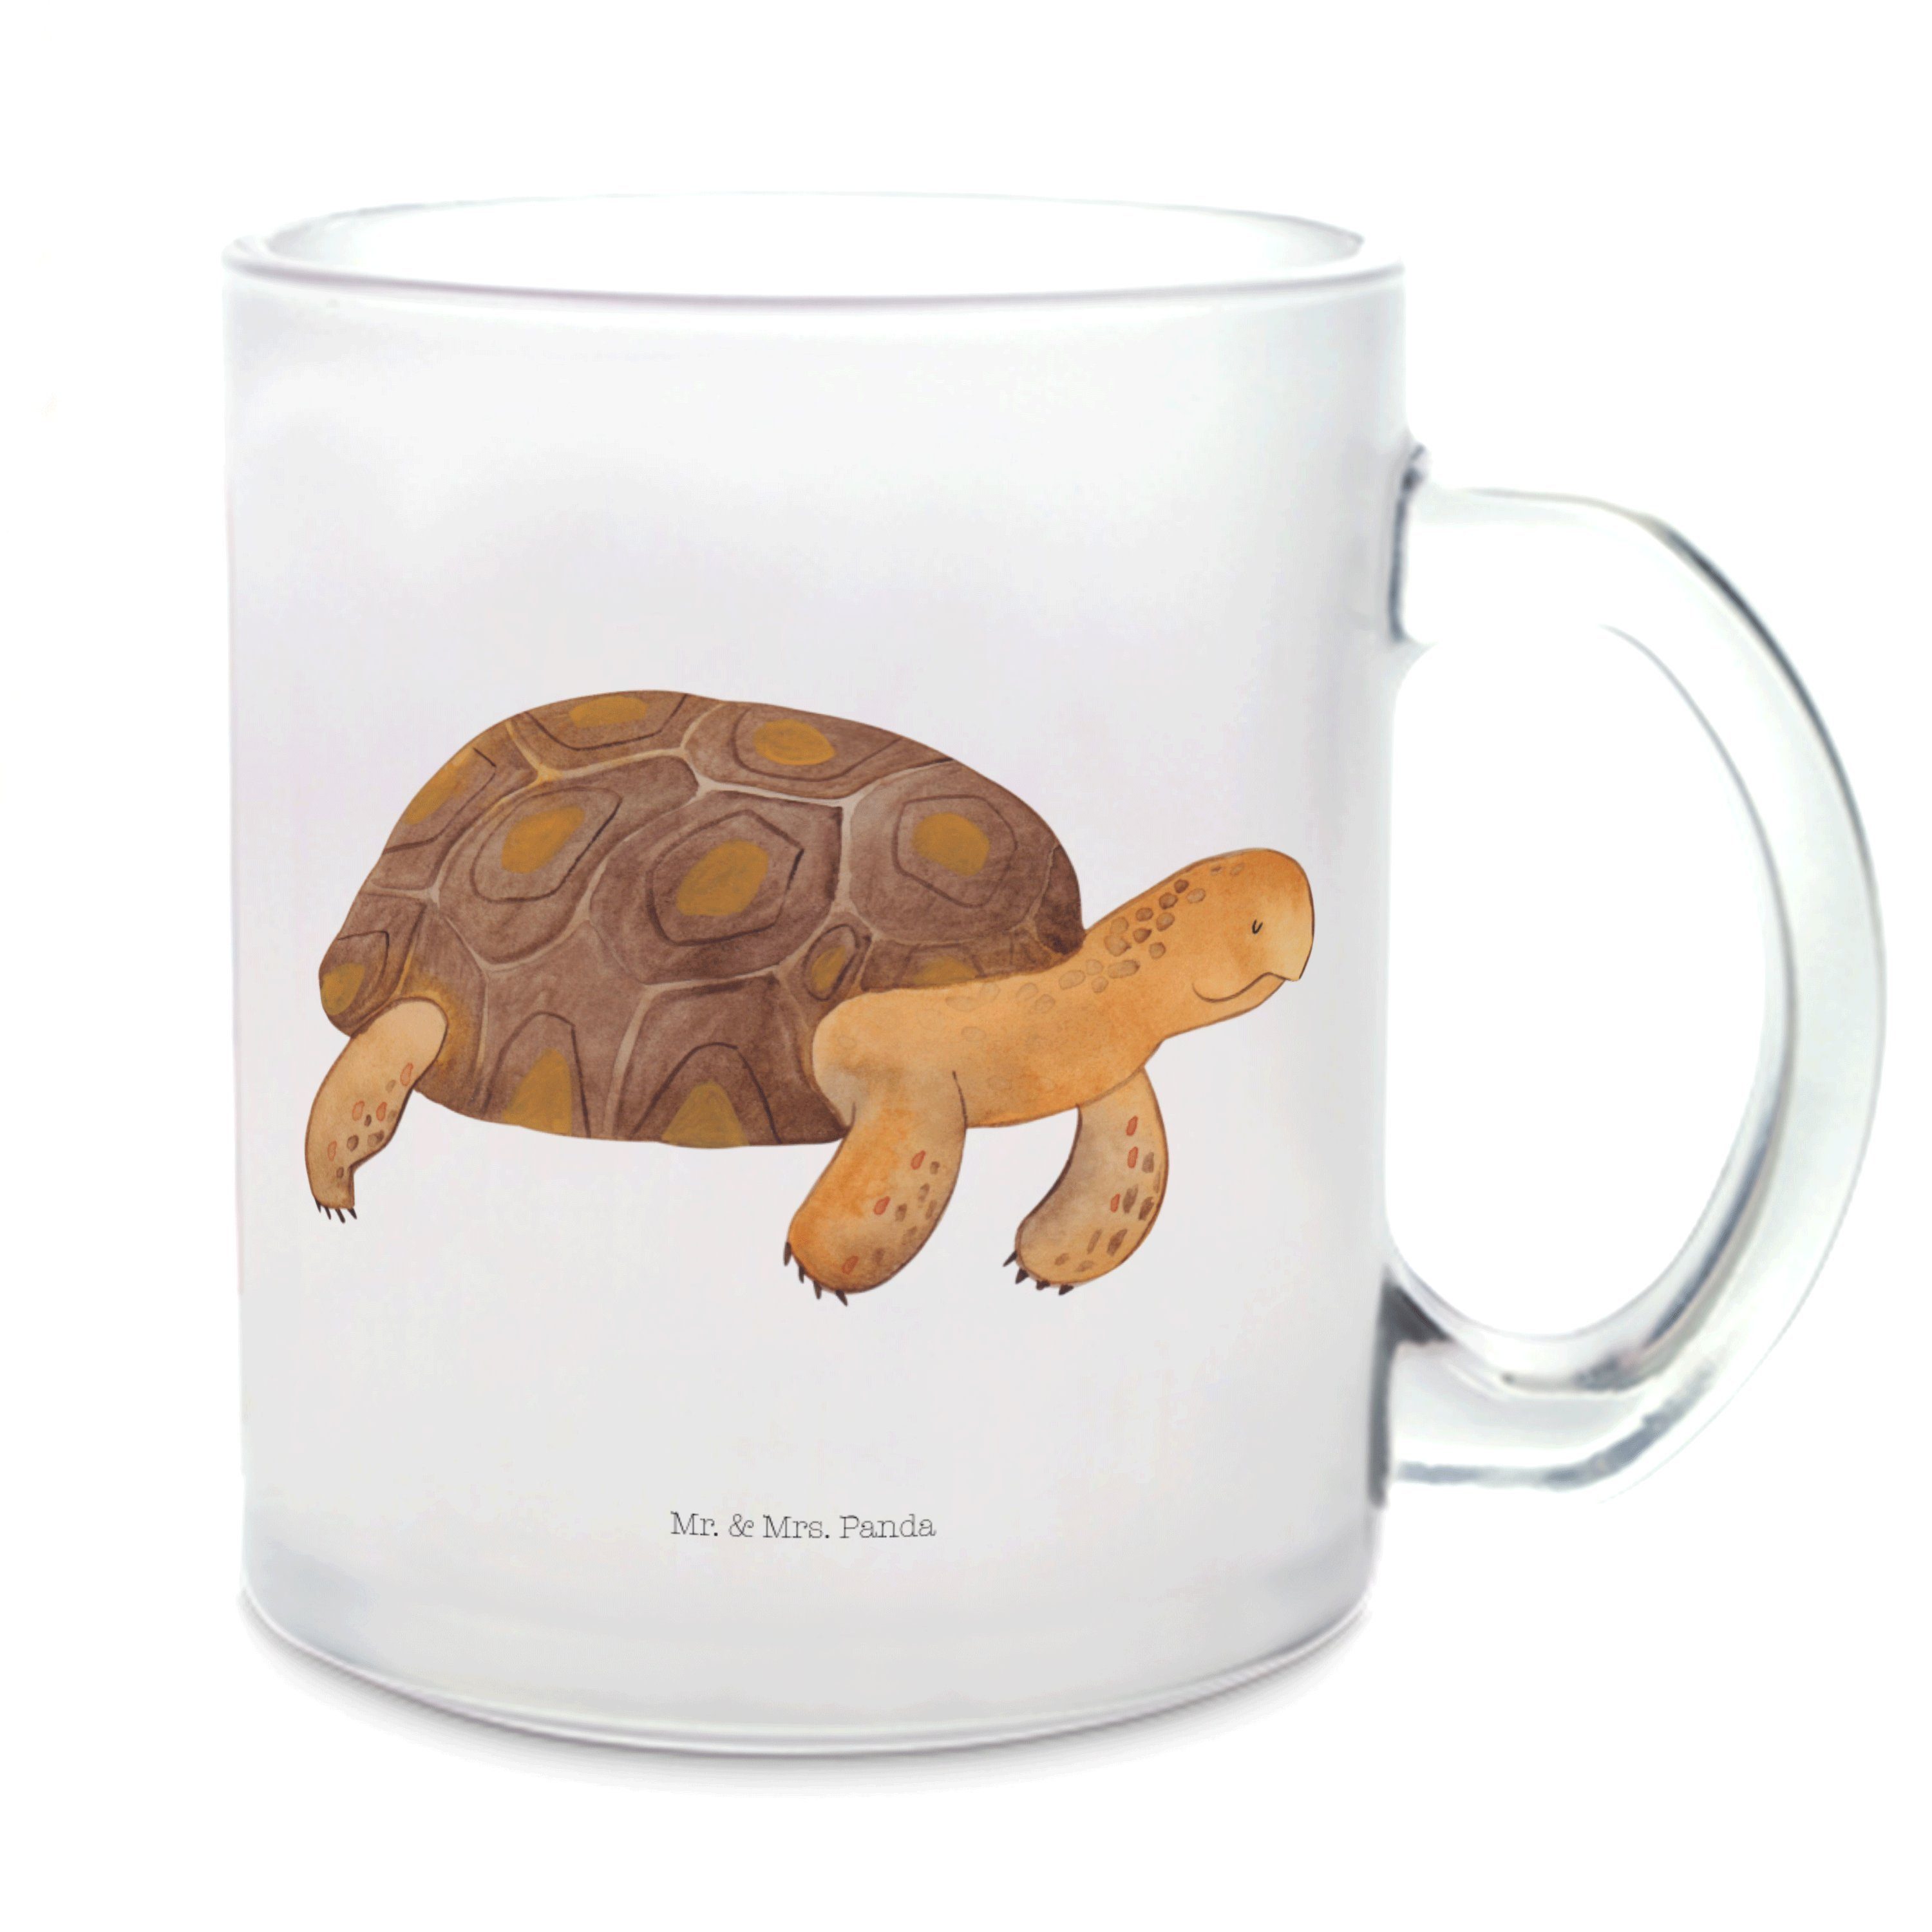 Mr. & Mrs. Panda Teeglas Schildkröte Marschieren - Transparent - Geschenk, Meerestiere, Tasse, Premium Glas, Edler Aufdruck